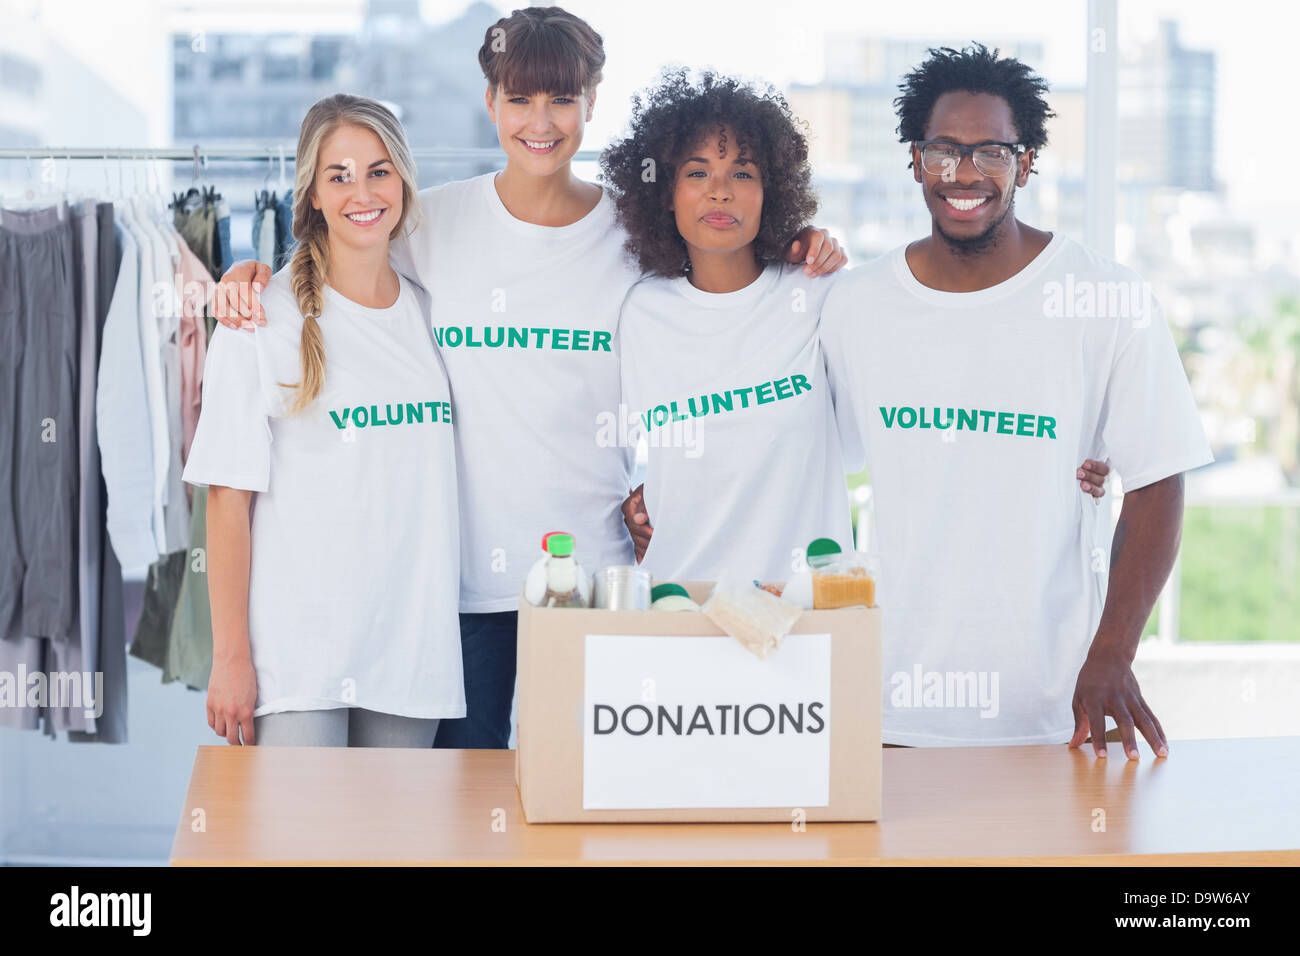 Les bénévoles debout devant de la nourriture dans une boîte de donation Banque D'Images